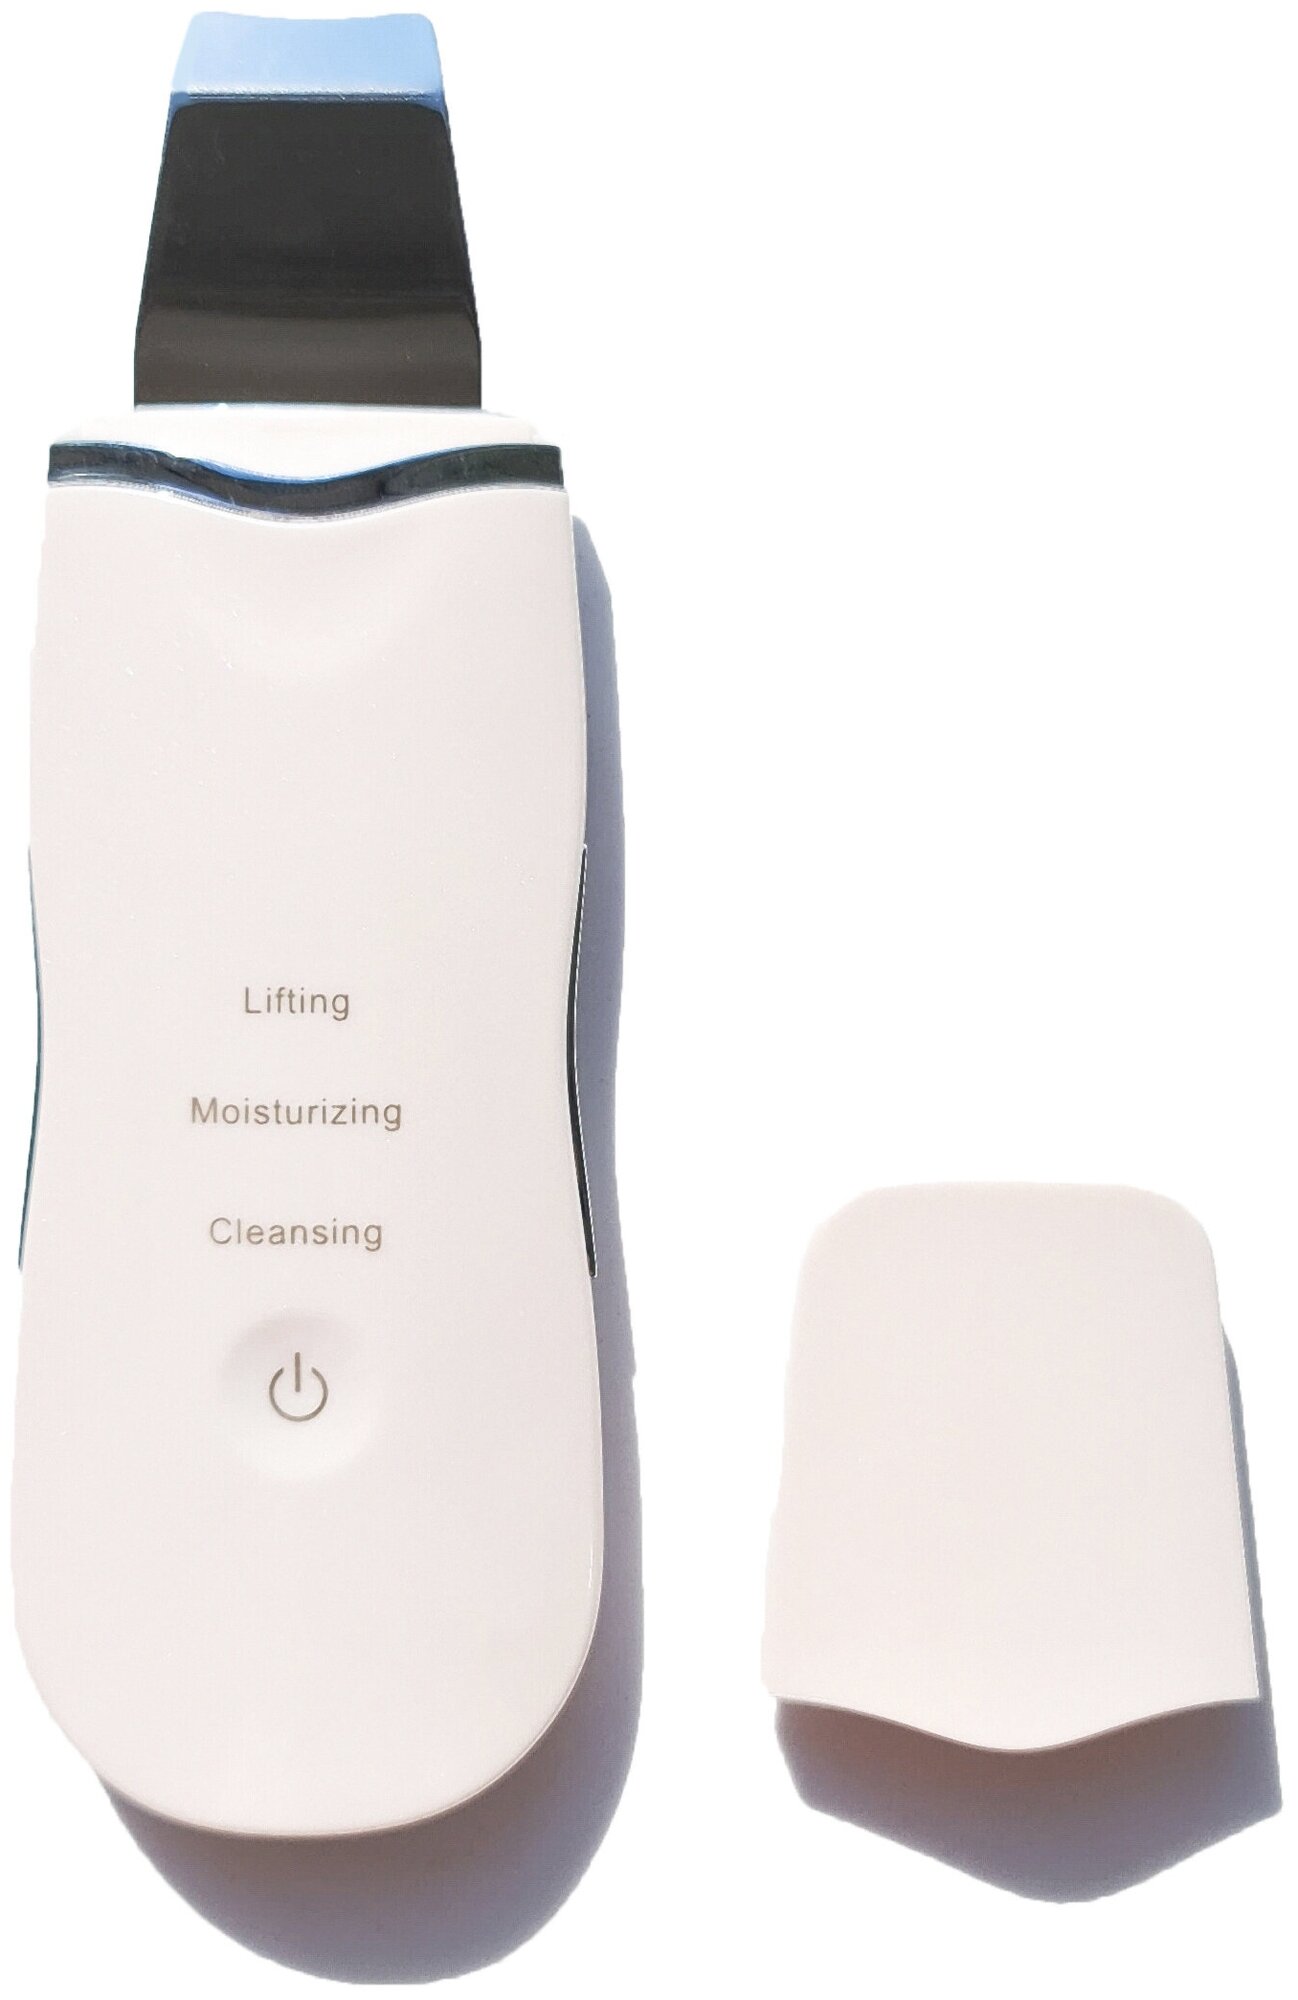 Ультразвуковой аппарат для чистки лица Beauty start / ультразвуковой скрабер для ухода за кожей / массажер с эффектом лифтинга / пилинг